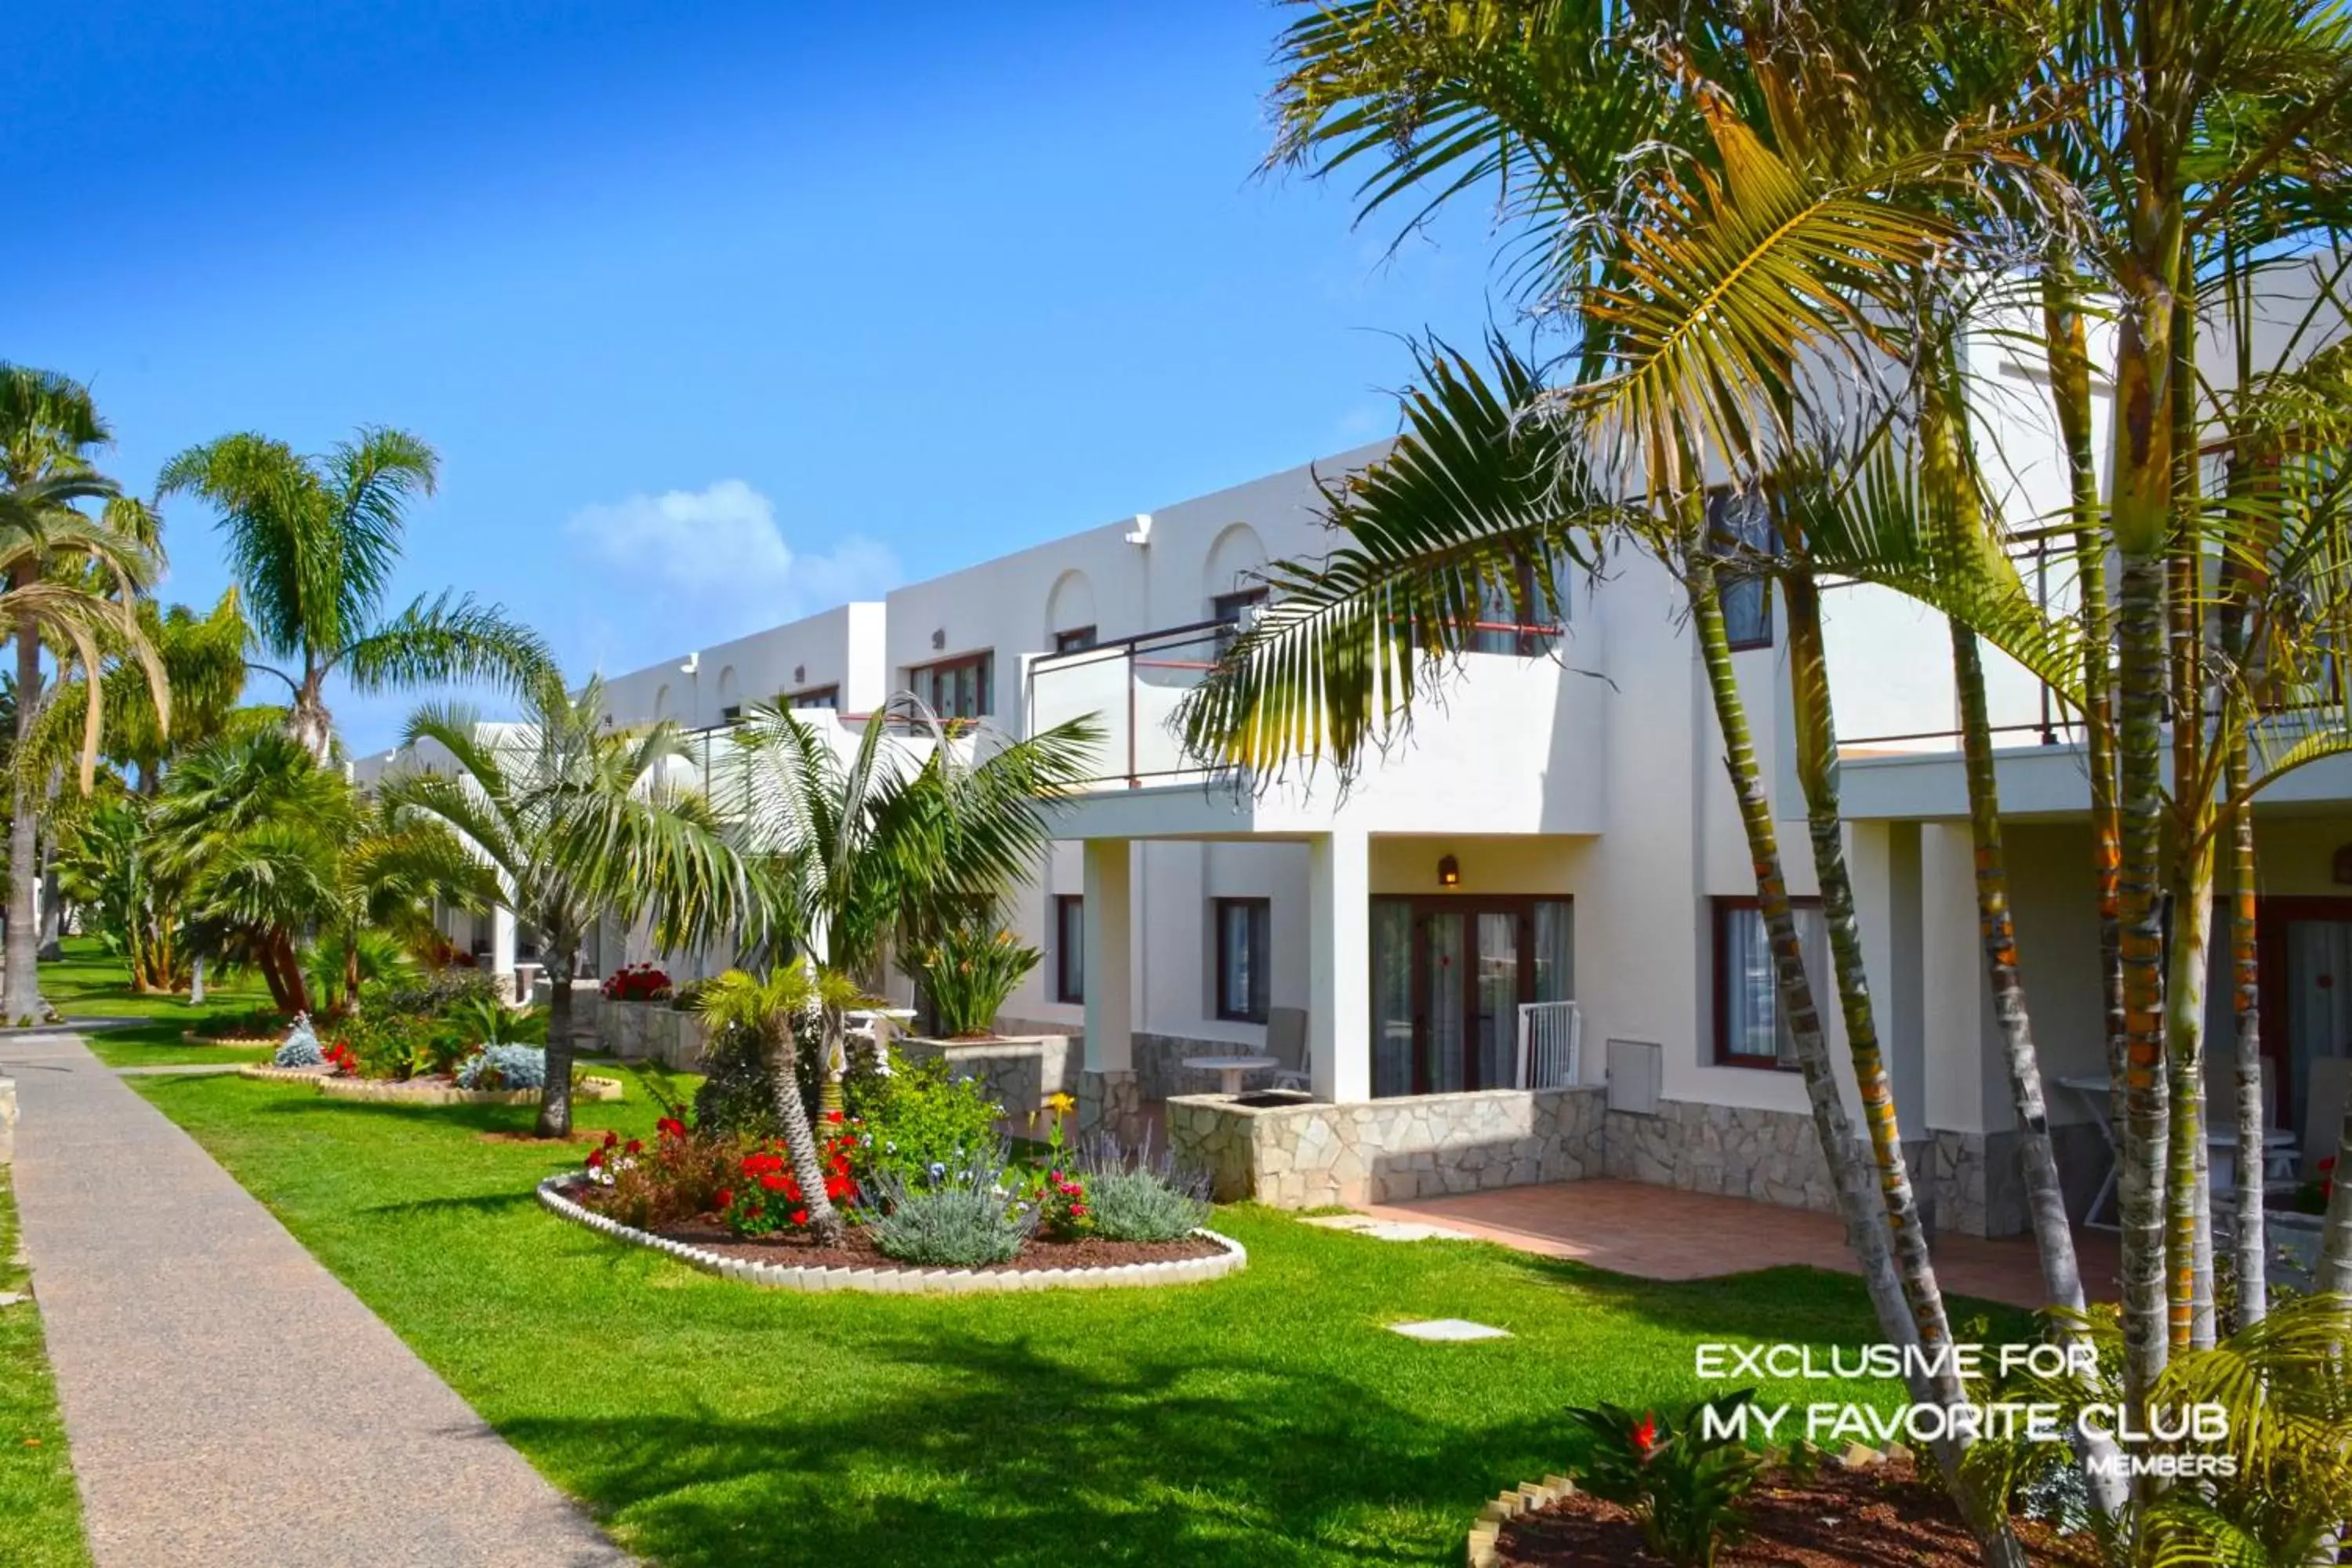 Garden, Property Building in Alua Suites Fuerteventura - All Inclusive